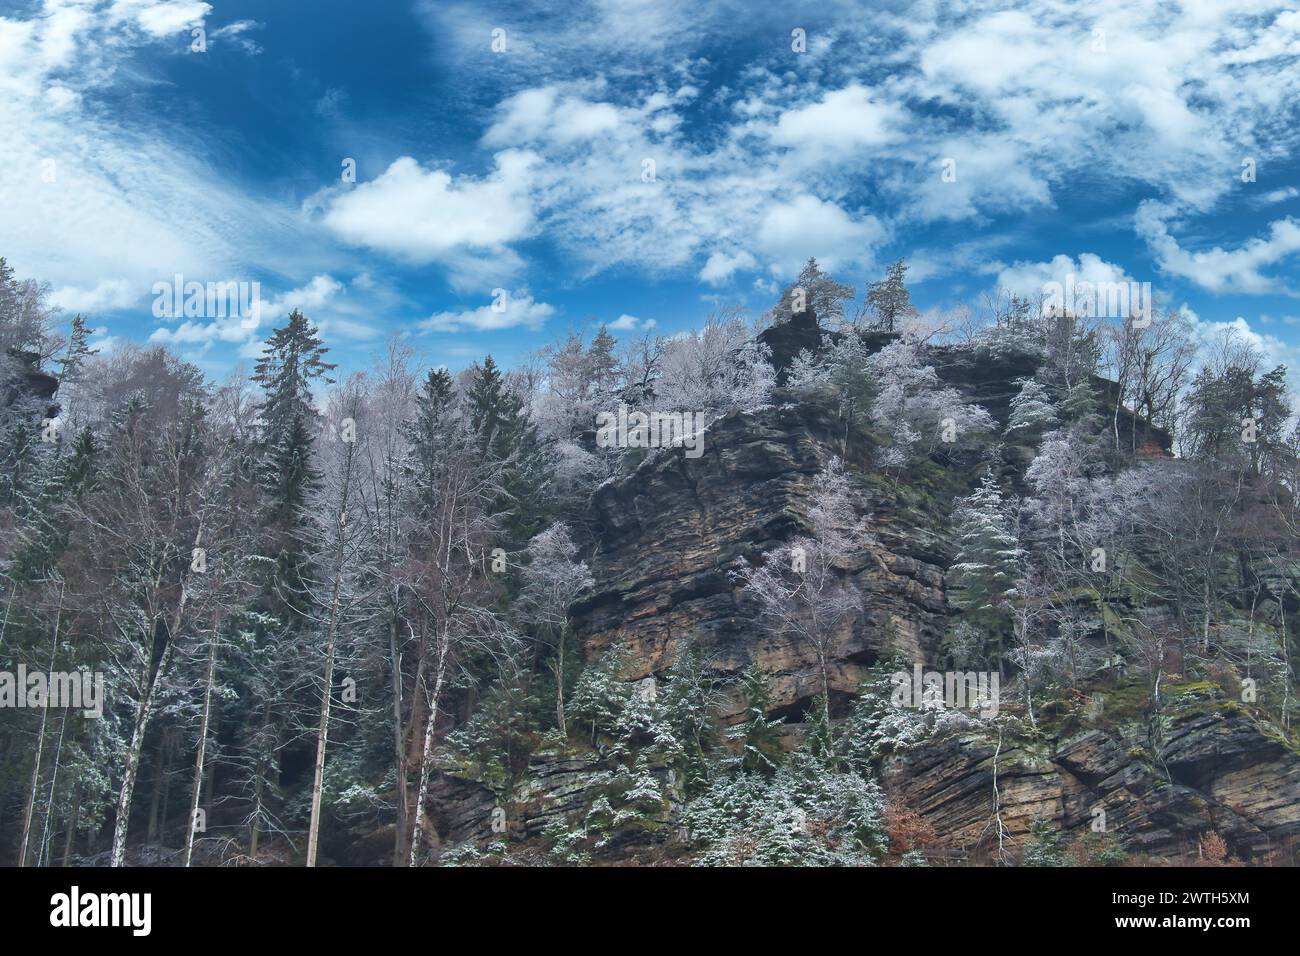 Vue sur le grand Zschirnstein avec des arbres enneigés et lever de soleil dans le brouillard, sur le sommet, lors d'une randonnée. Depuis le parc naturel de l'Elbe Sandstone Mo Banque D'Images